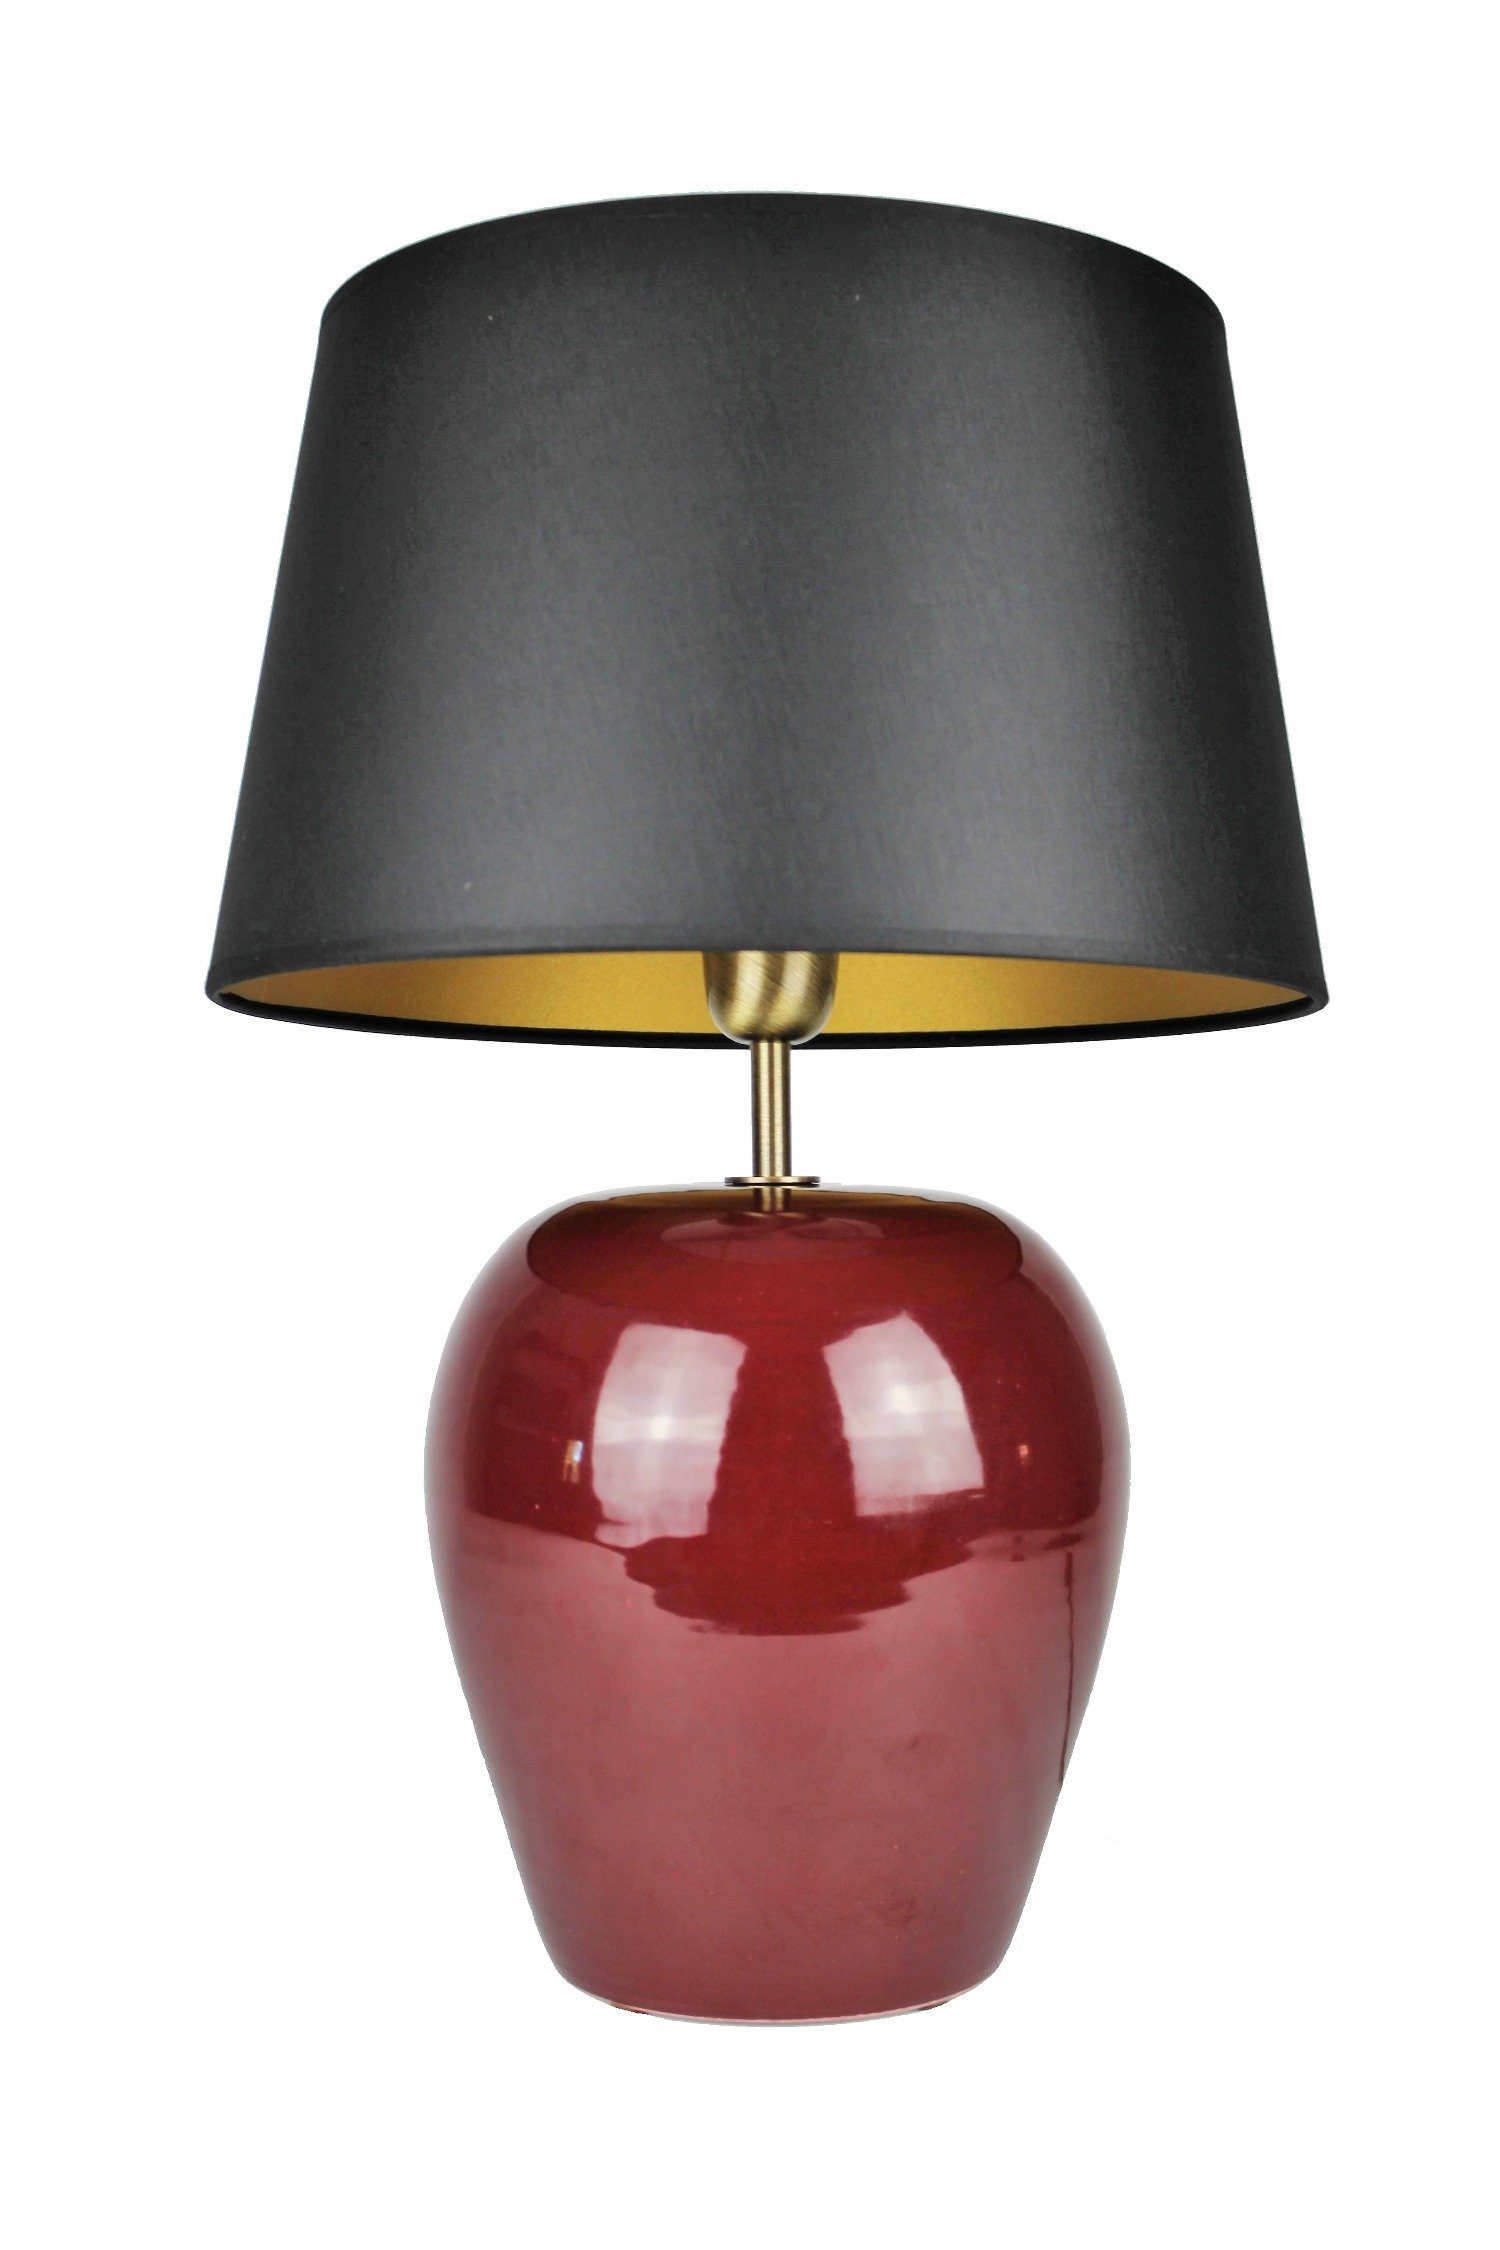 Signature Home Collection Nachttischlampe, ohne Leuchtmittel, warmweiß, Keramiklampe Nachttischlampe rot mit Lampenschirm